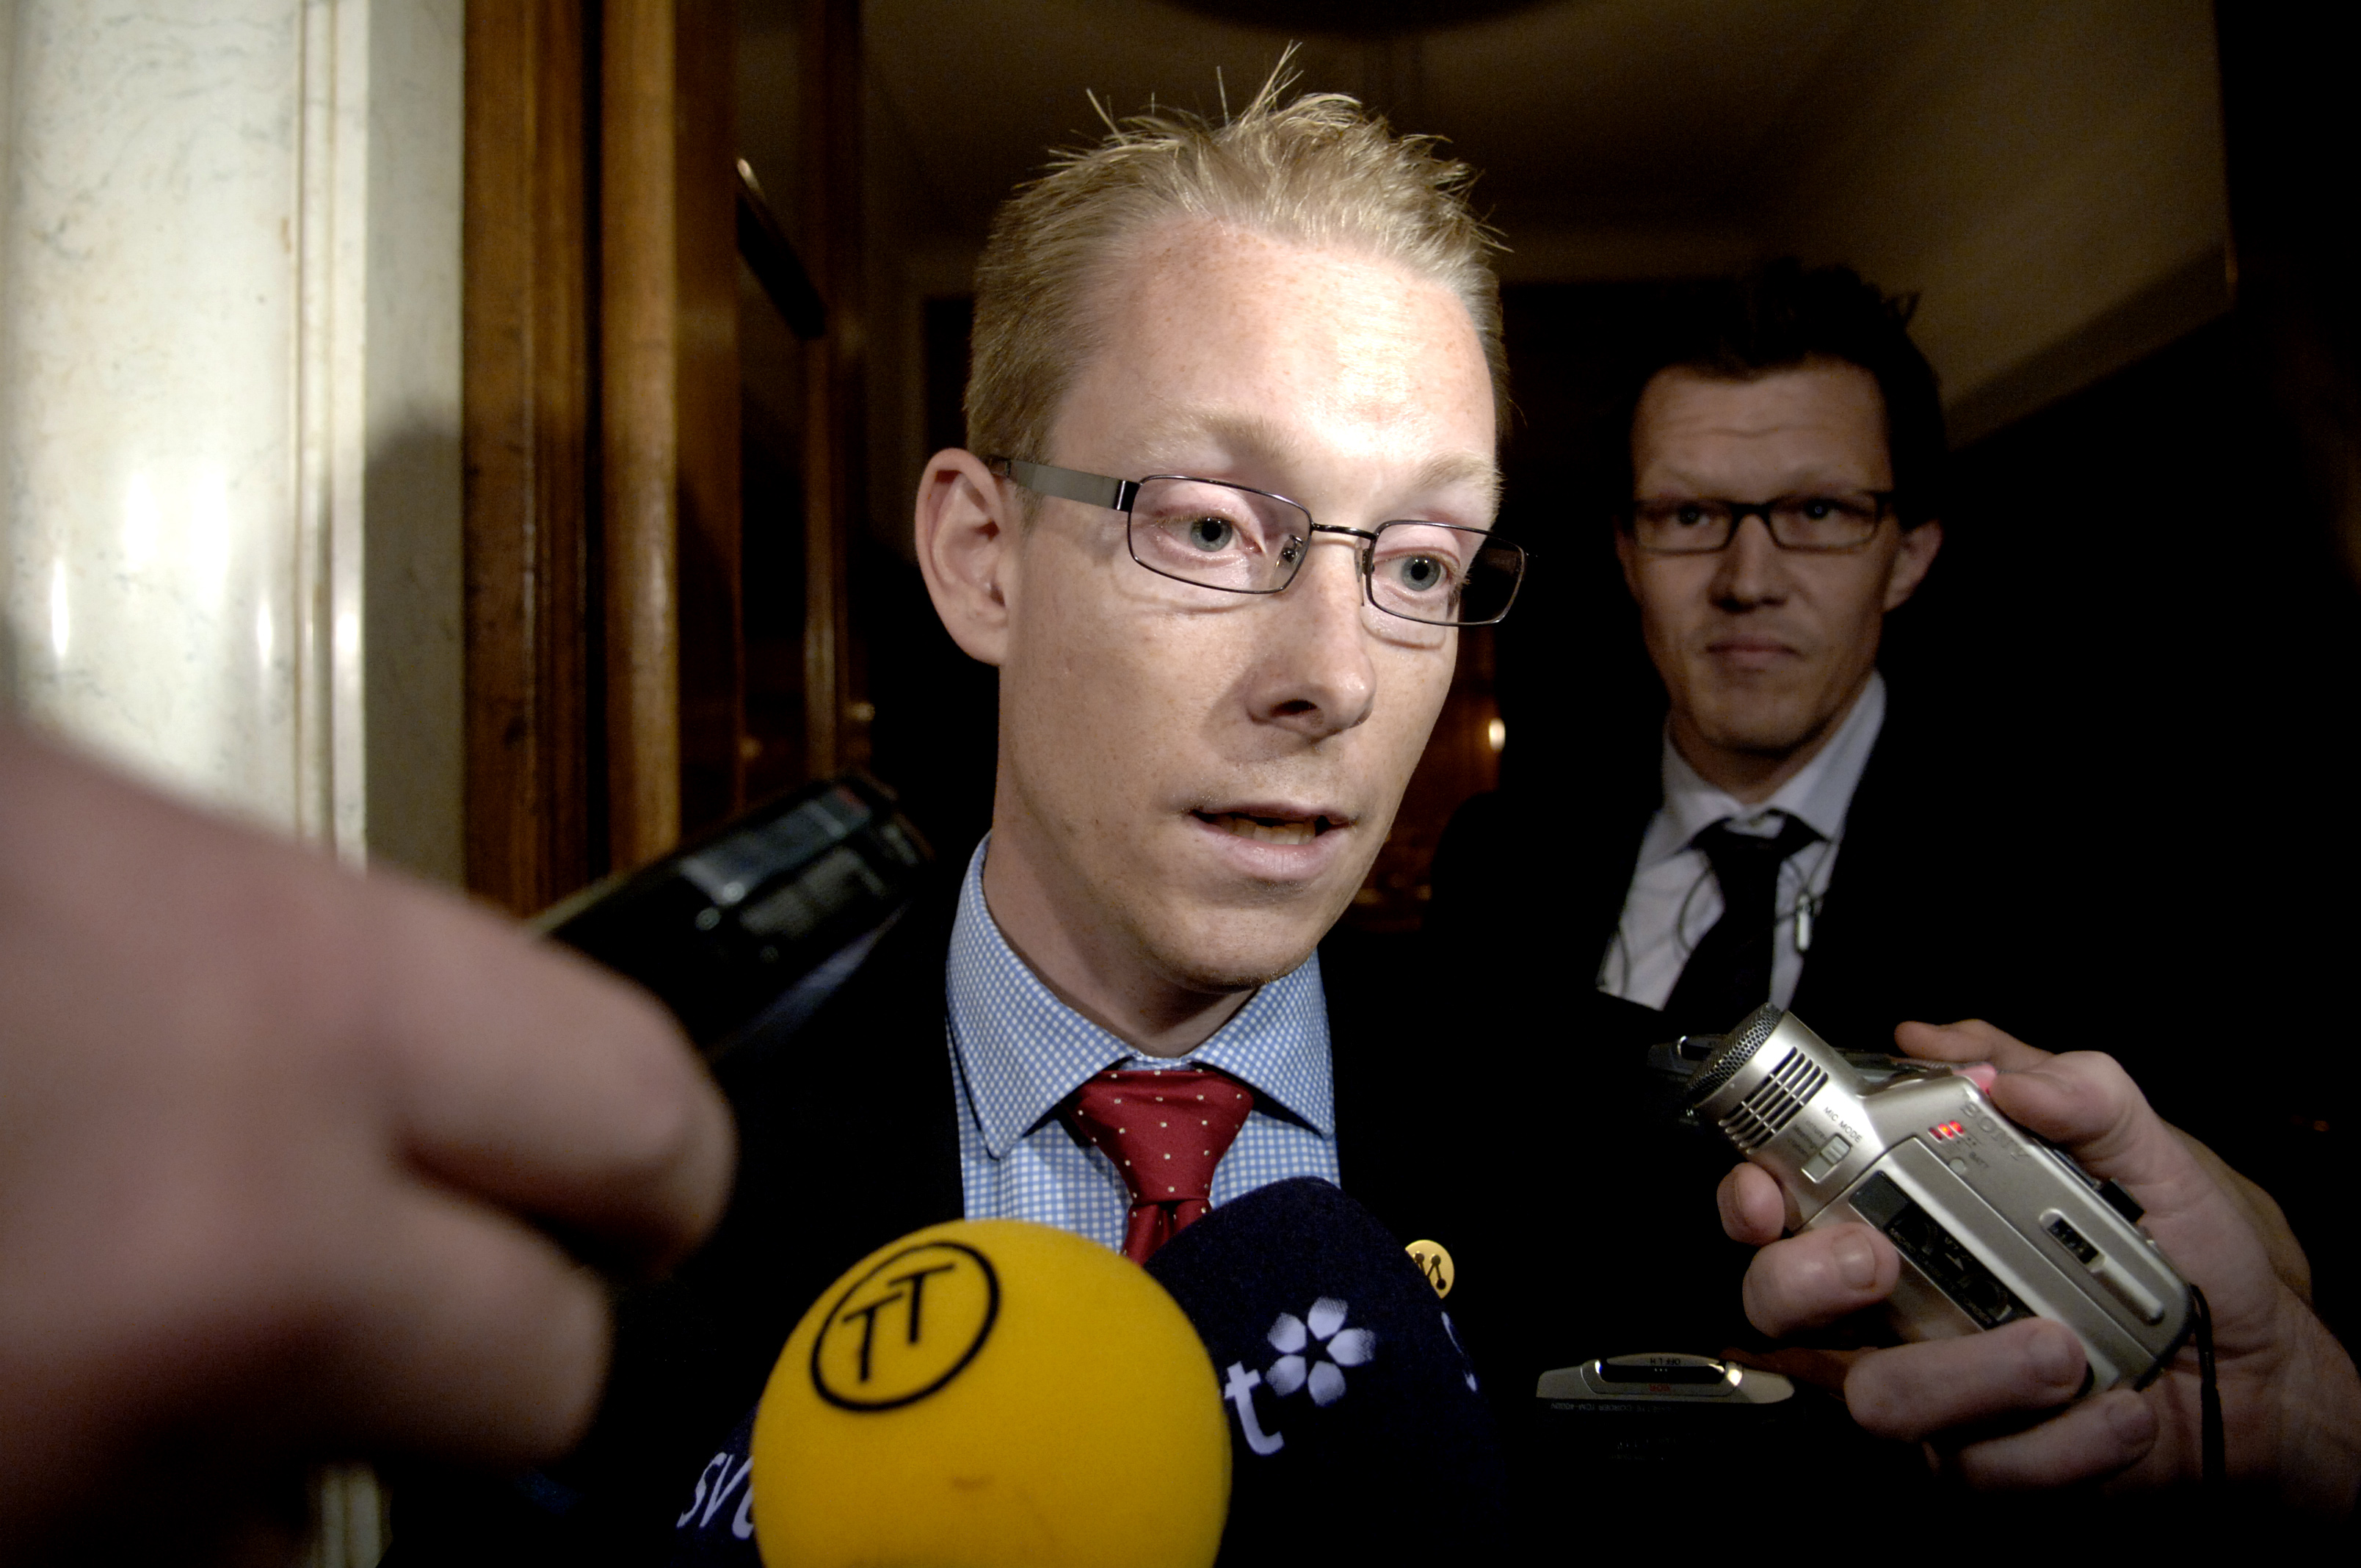 Den moderate migrationsministern Tobias Billström hotades i kommentarsfältet på den SD-kopplade sajten Avpixlat.